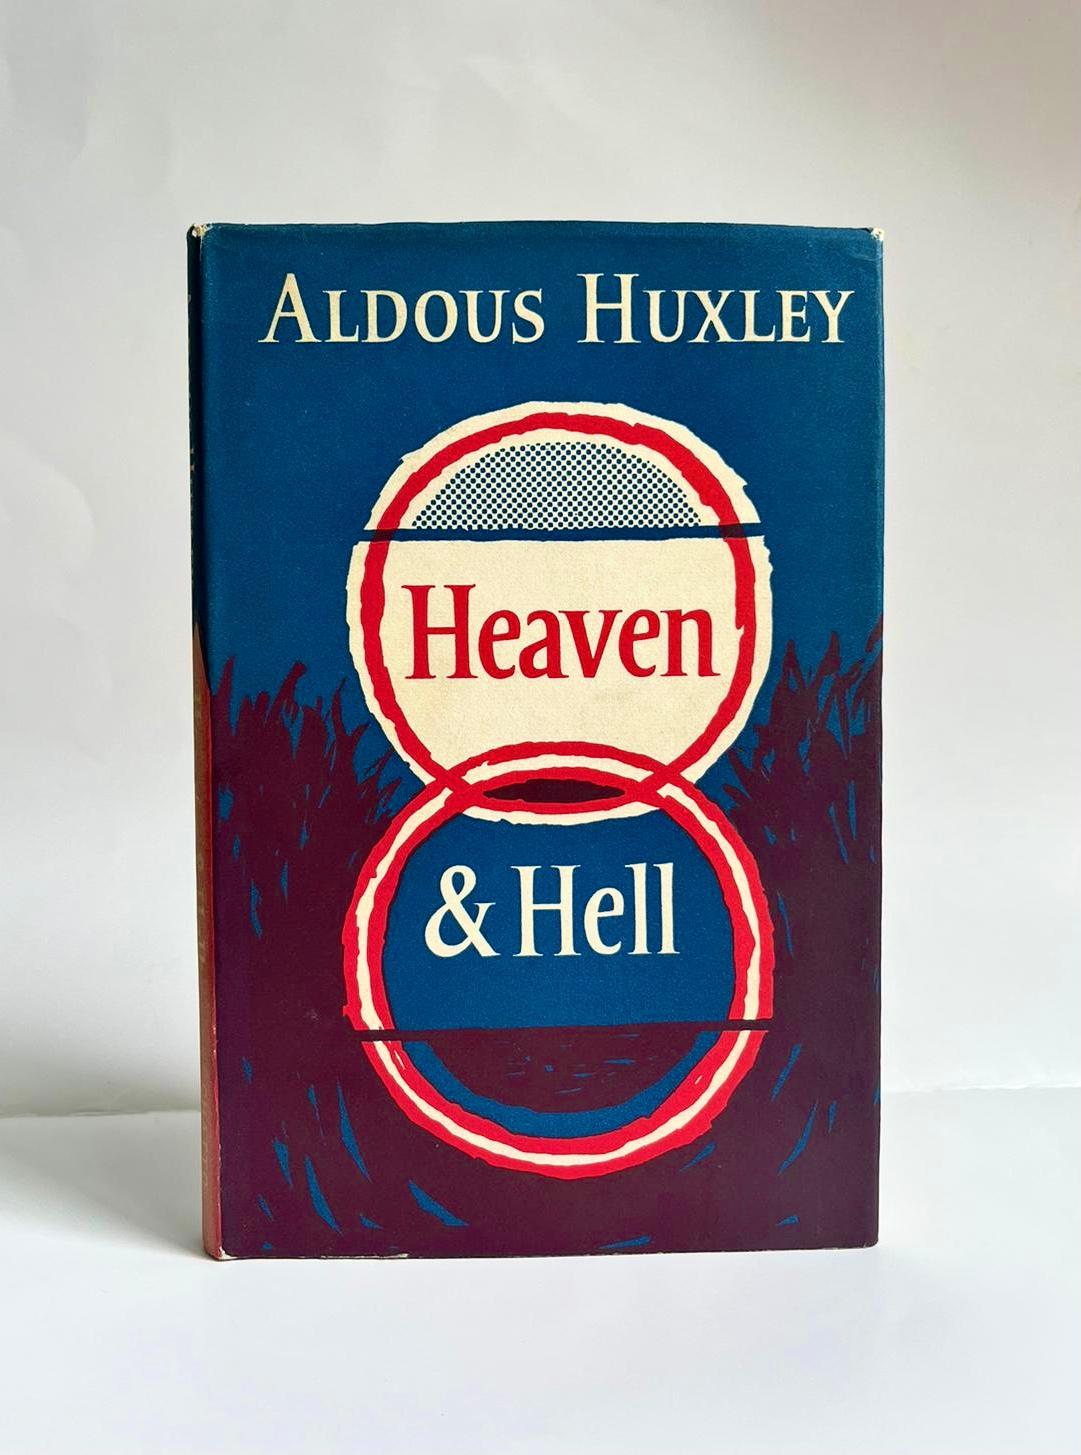 Heaven & Hell by Aldous Huxley